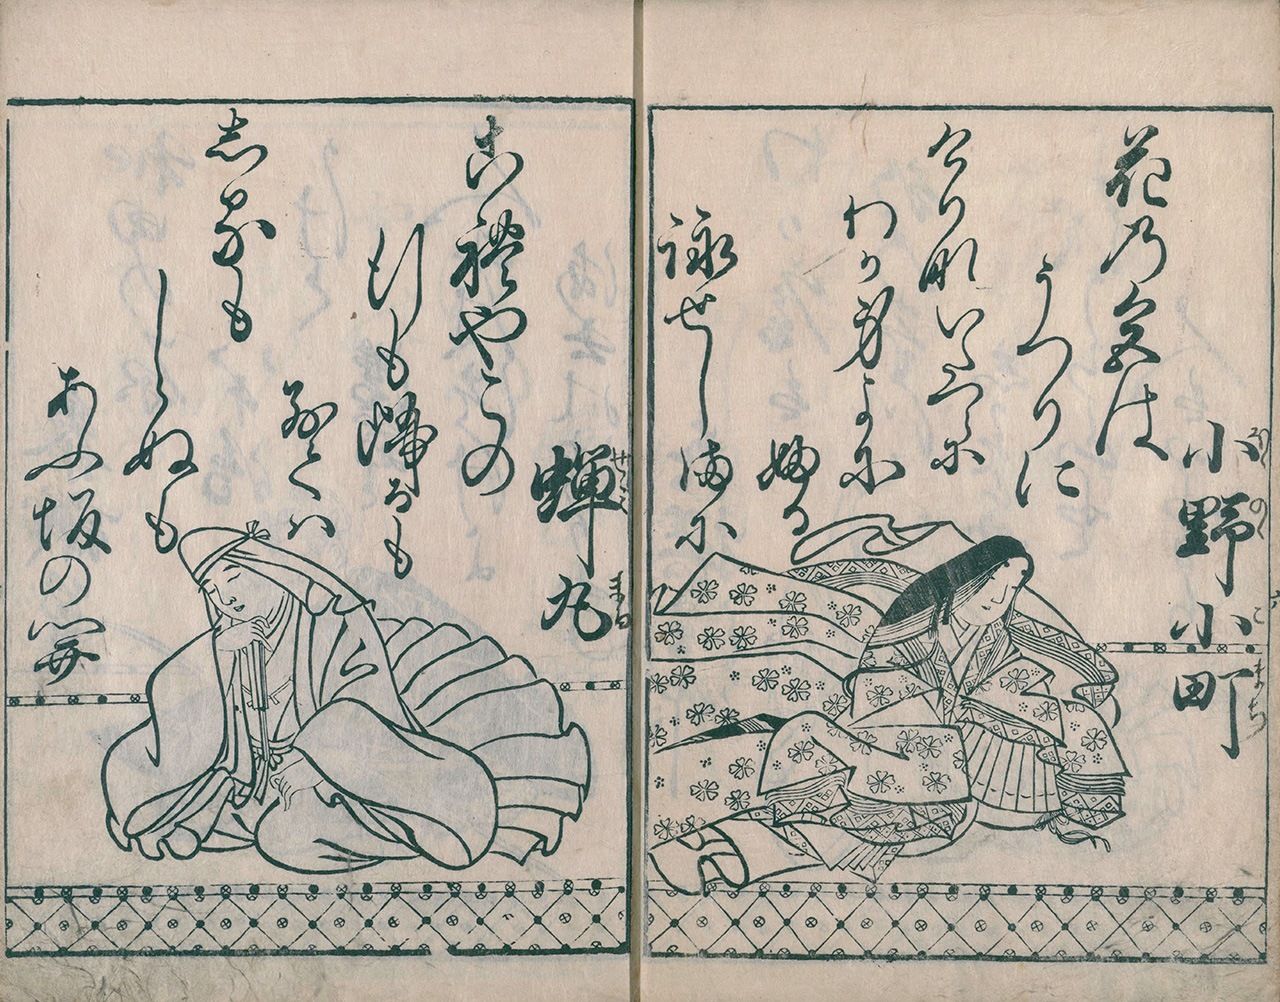 Ono no Komachi, à droite, dans Hyakunin isshu (Cent poèmes de cent poètes), une compilation de poèmes classiques japonais datant de 1680 (avec l'aimable autorisation de la Bibliothèque nationale de la Diète).